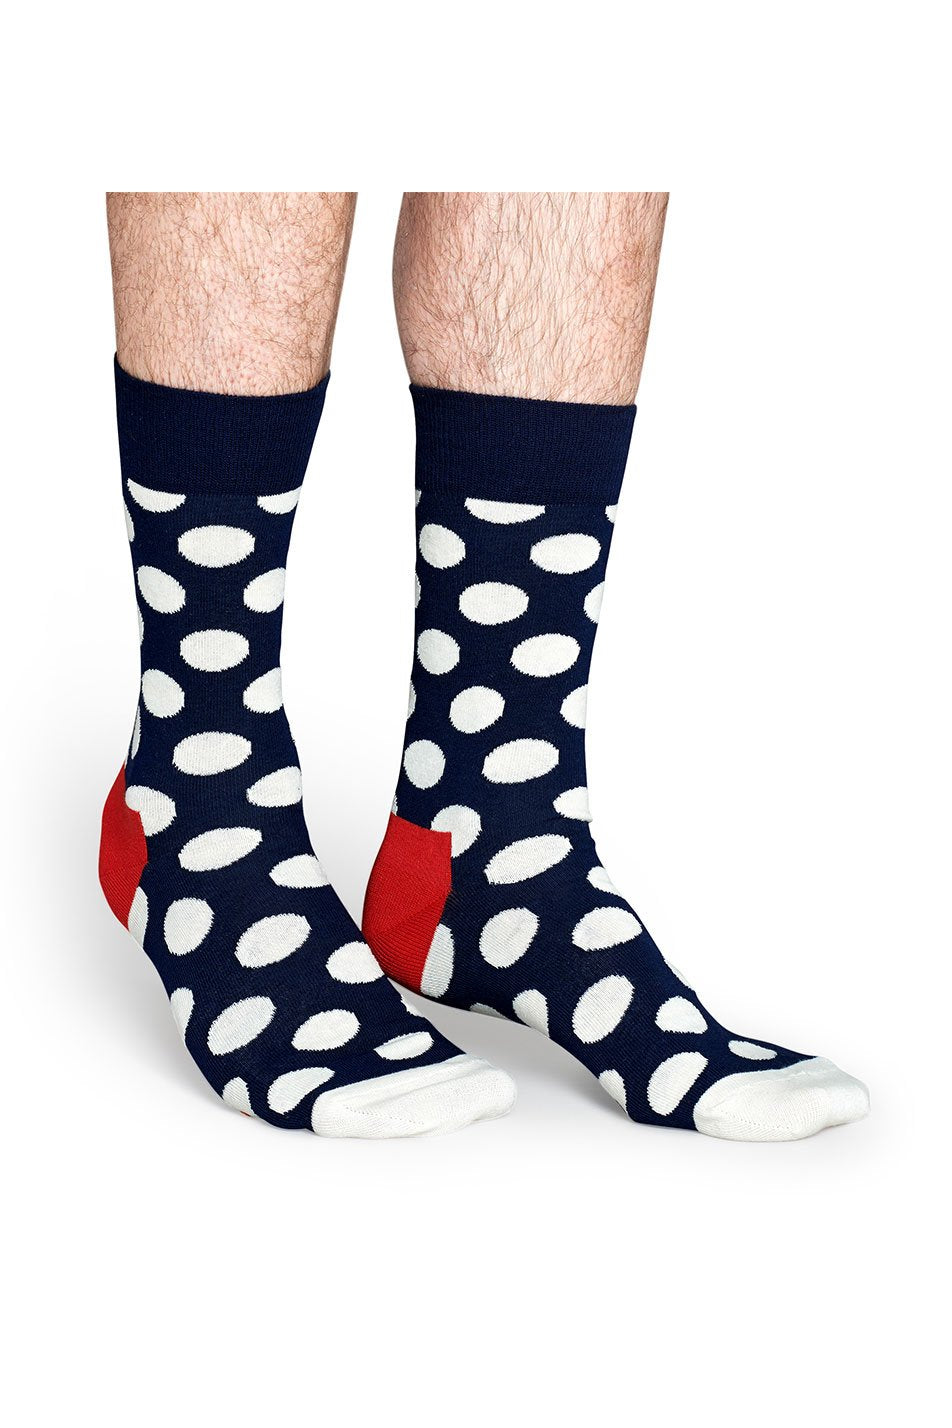 Happy Socks Men's Big Dot Socks